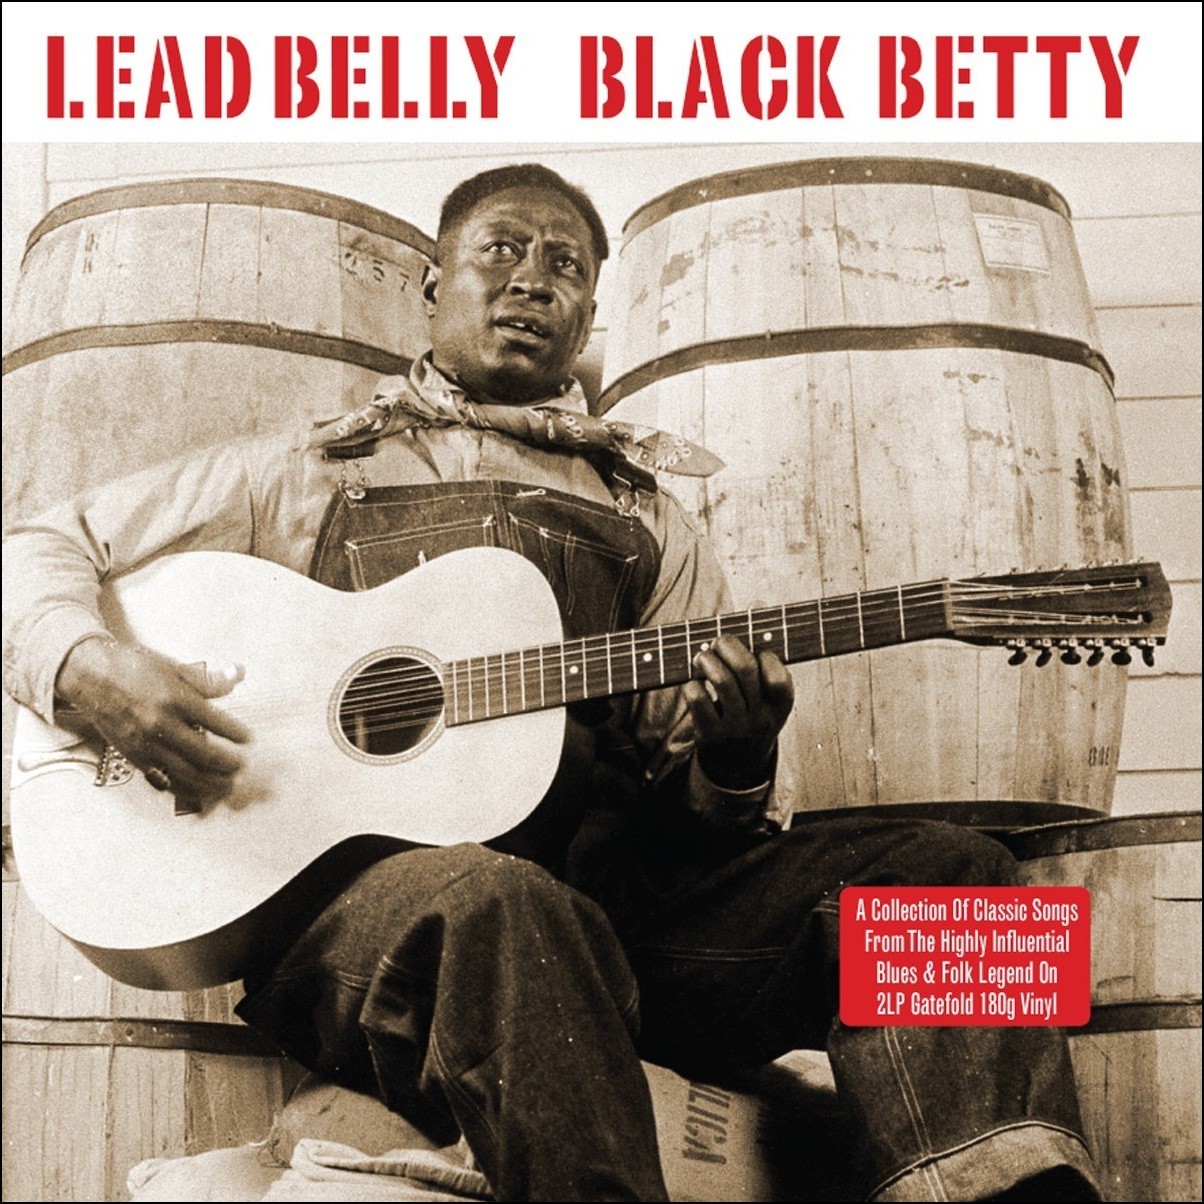 leadbelly-black-betty-vinyl-2lp-gatefold-set